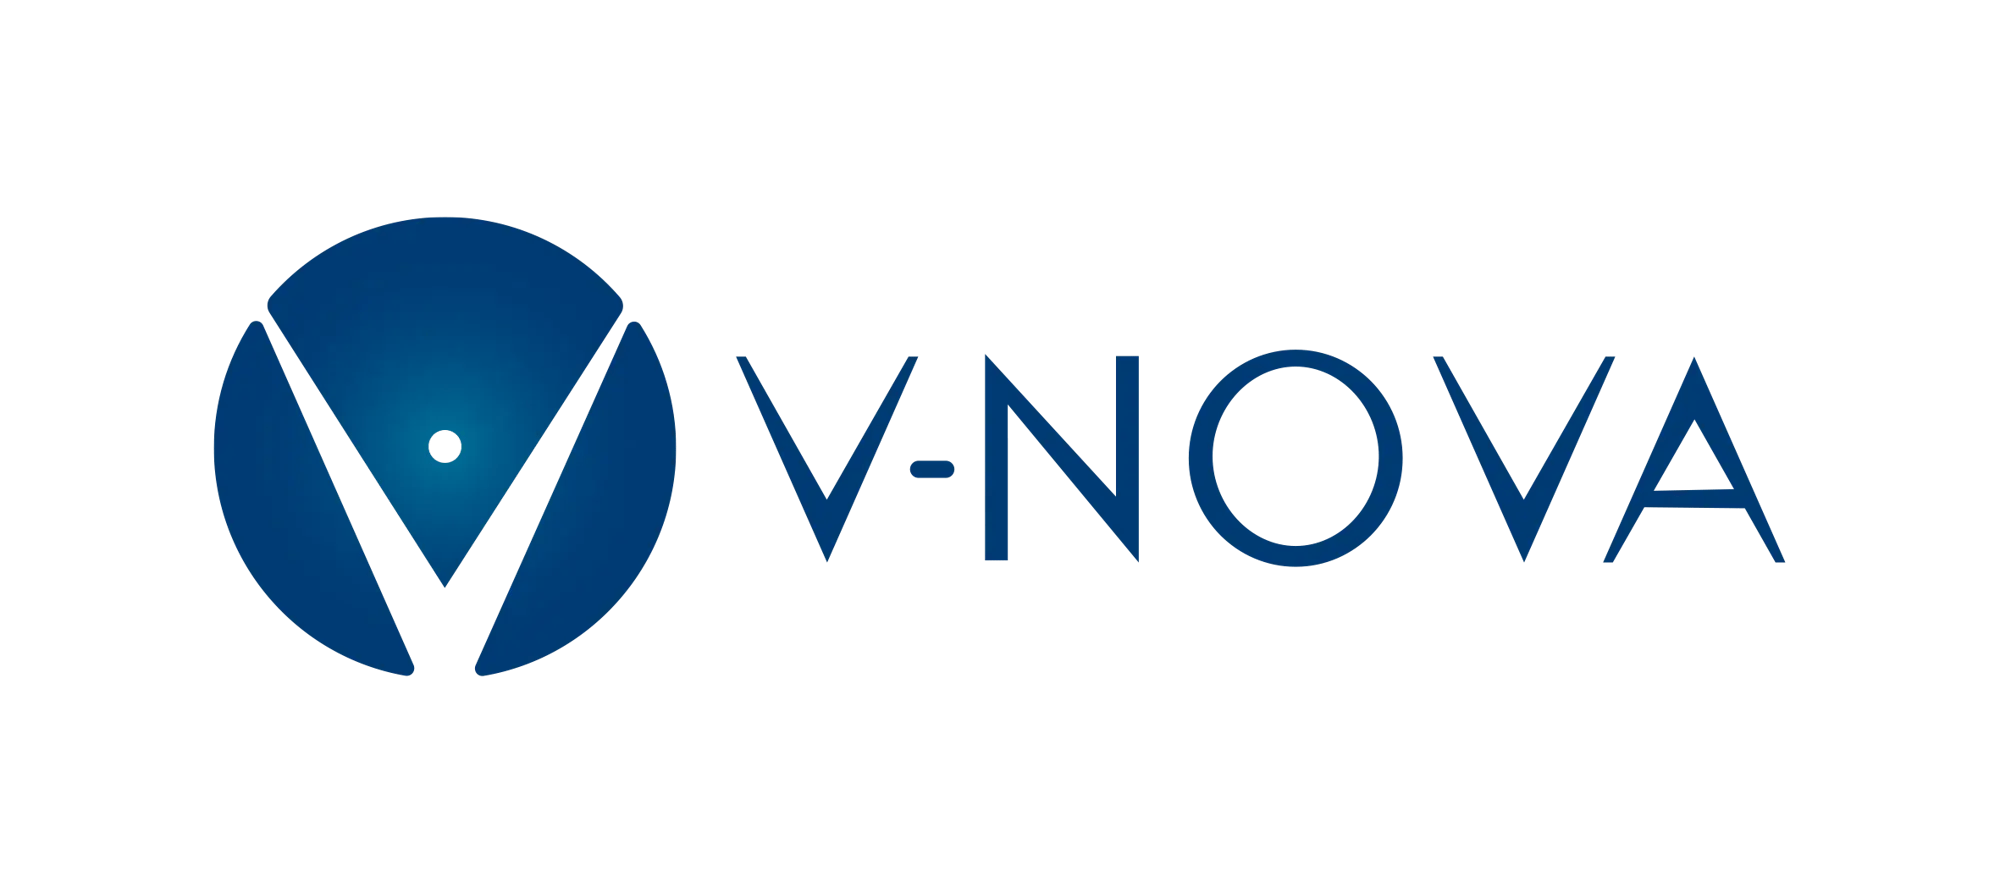 V-nova_logo2020_Horizontal_rgb-2